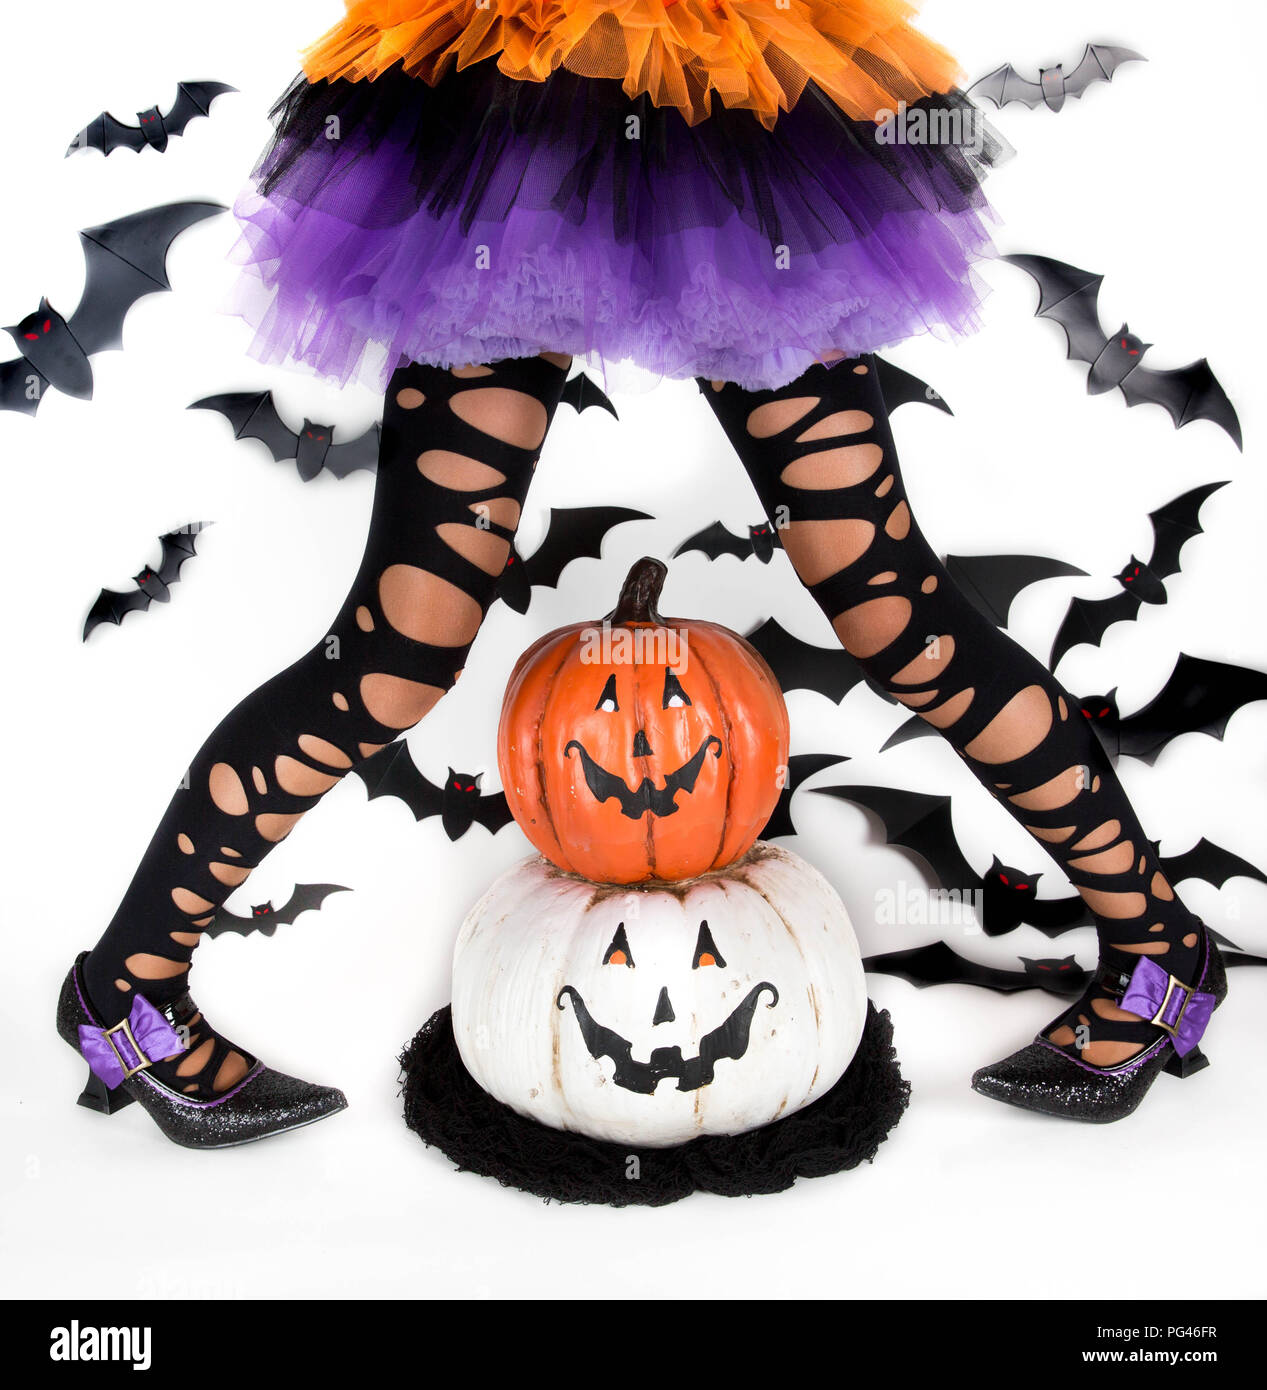 Gracioso ragged las piernas de una niña con disfraz de Halloween de una bruja con zapatos de bruja y sonriente calabaza de Halloween jack o lantern Foto de stock